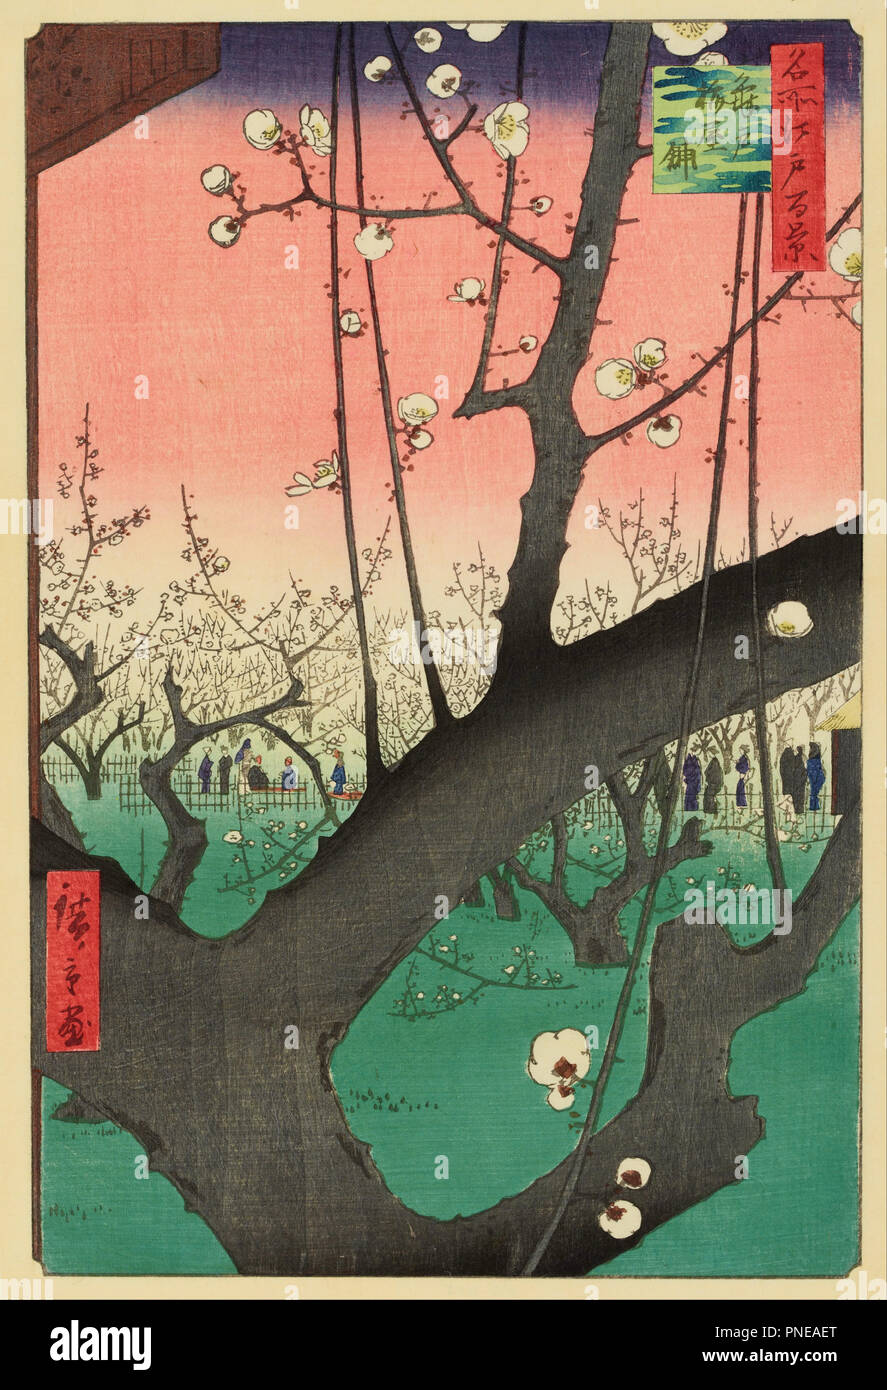 Plum Garden, Kameido. Date/période : 1857. Gravure sur bois. Largeur : 8.9 in. Hauteur : 13.5 in. Auteur : Ando Hiroshige. Utagawa Hiroshige. Banque D'Images